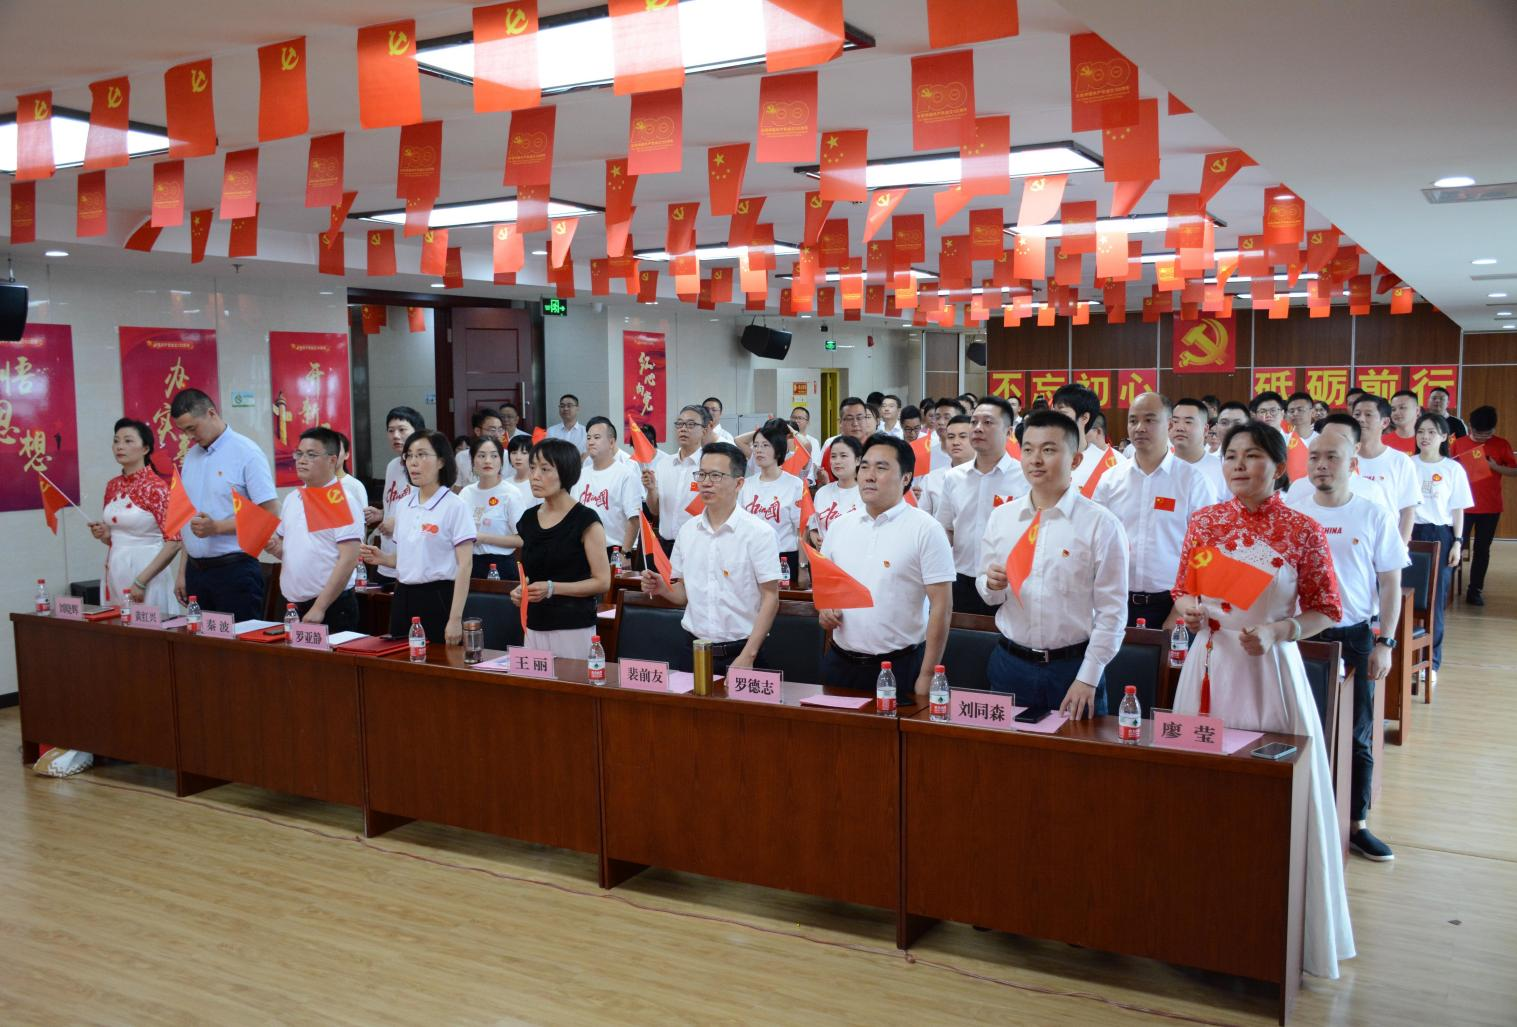  “學黨史、頌黨恩、跟黨走”農信集團舉辦慶祝中國共產黨成立100周年歌詠比賽